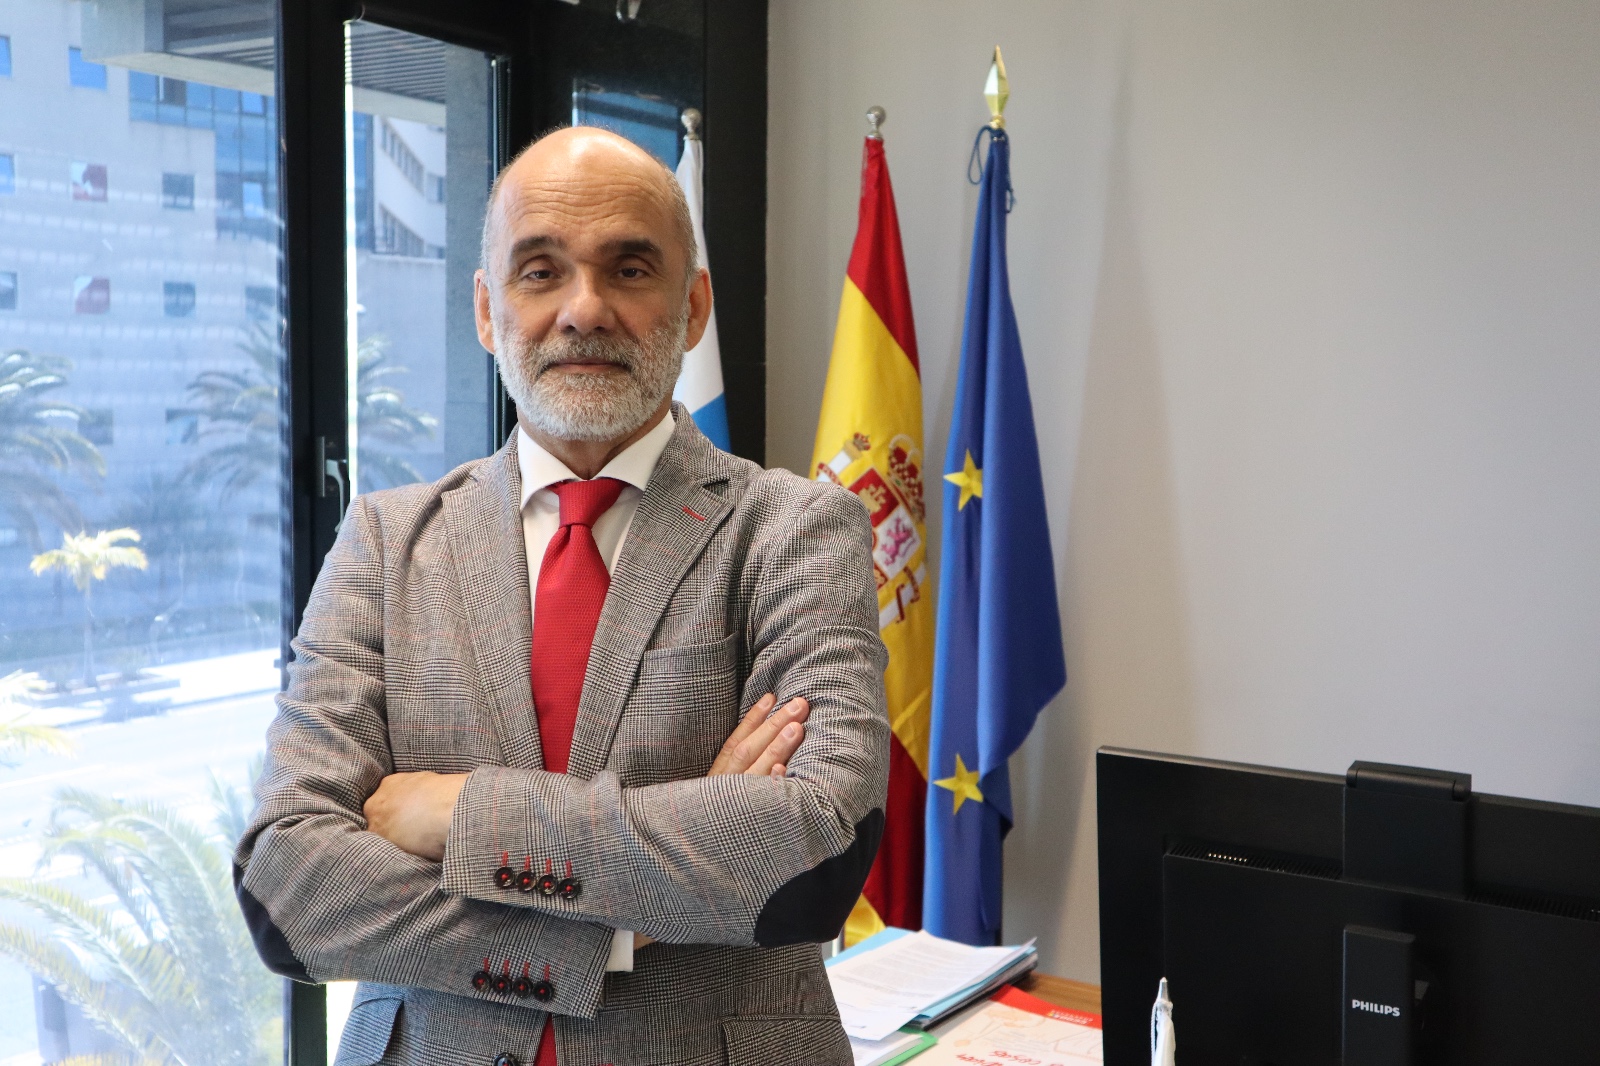 (COMUNICADO OFICIAL)
CANARIAS: La Consejería de Presidencia trabaja en una nueva planificación de los juegos y apuestas en Canarias